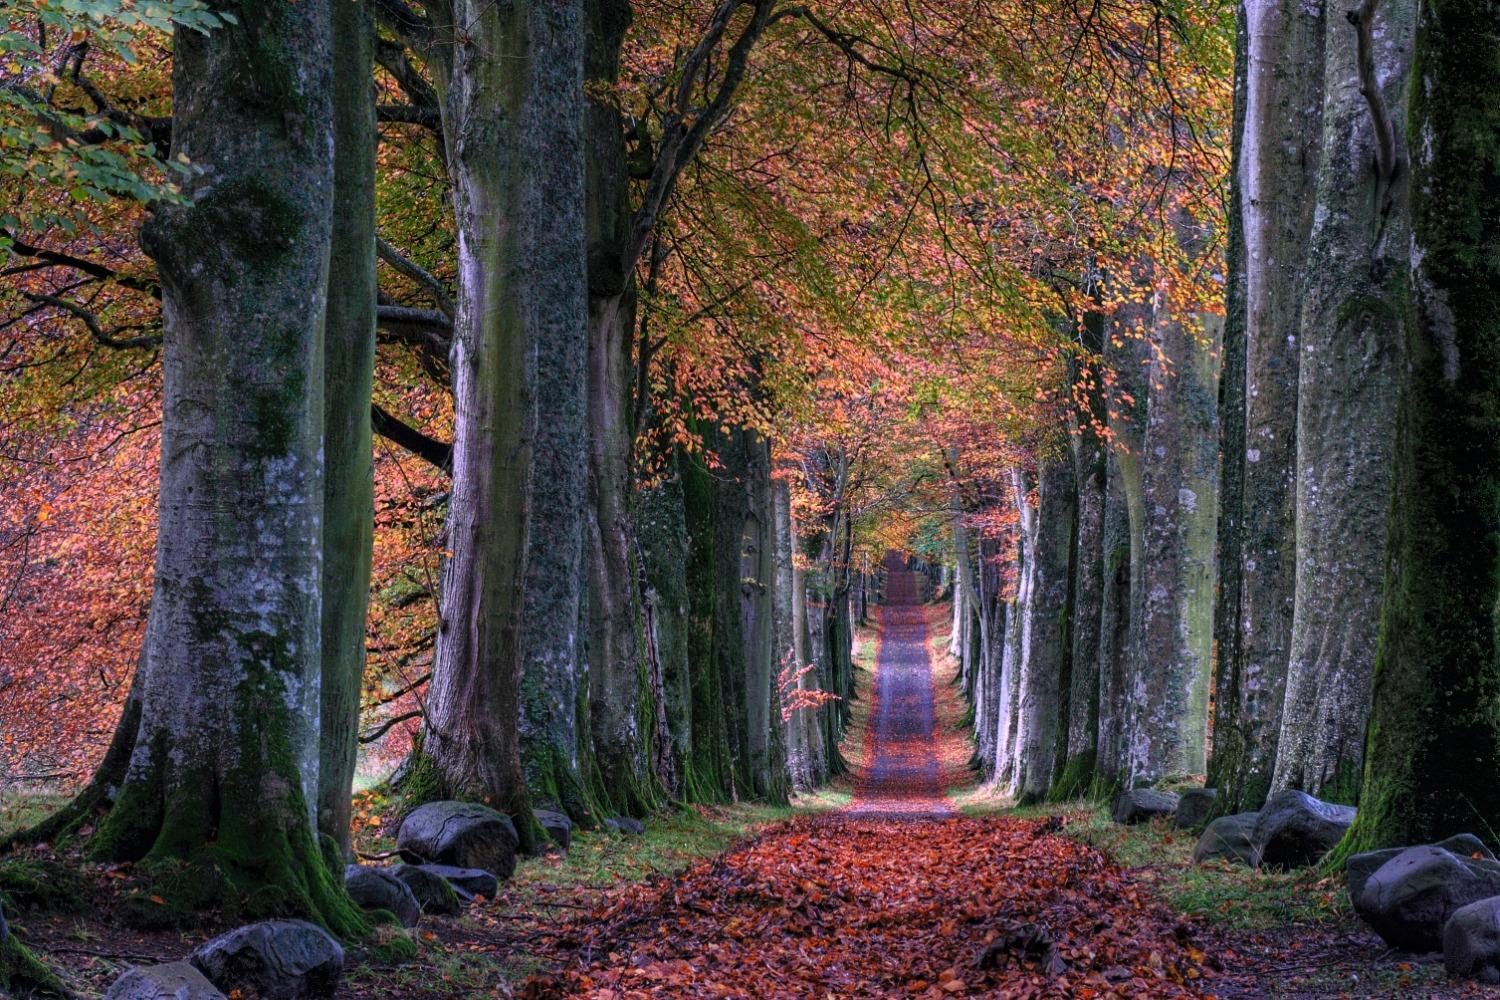 An autumn path